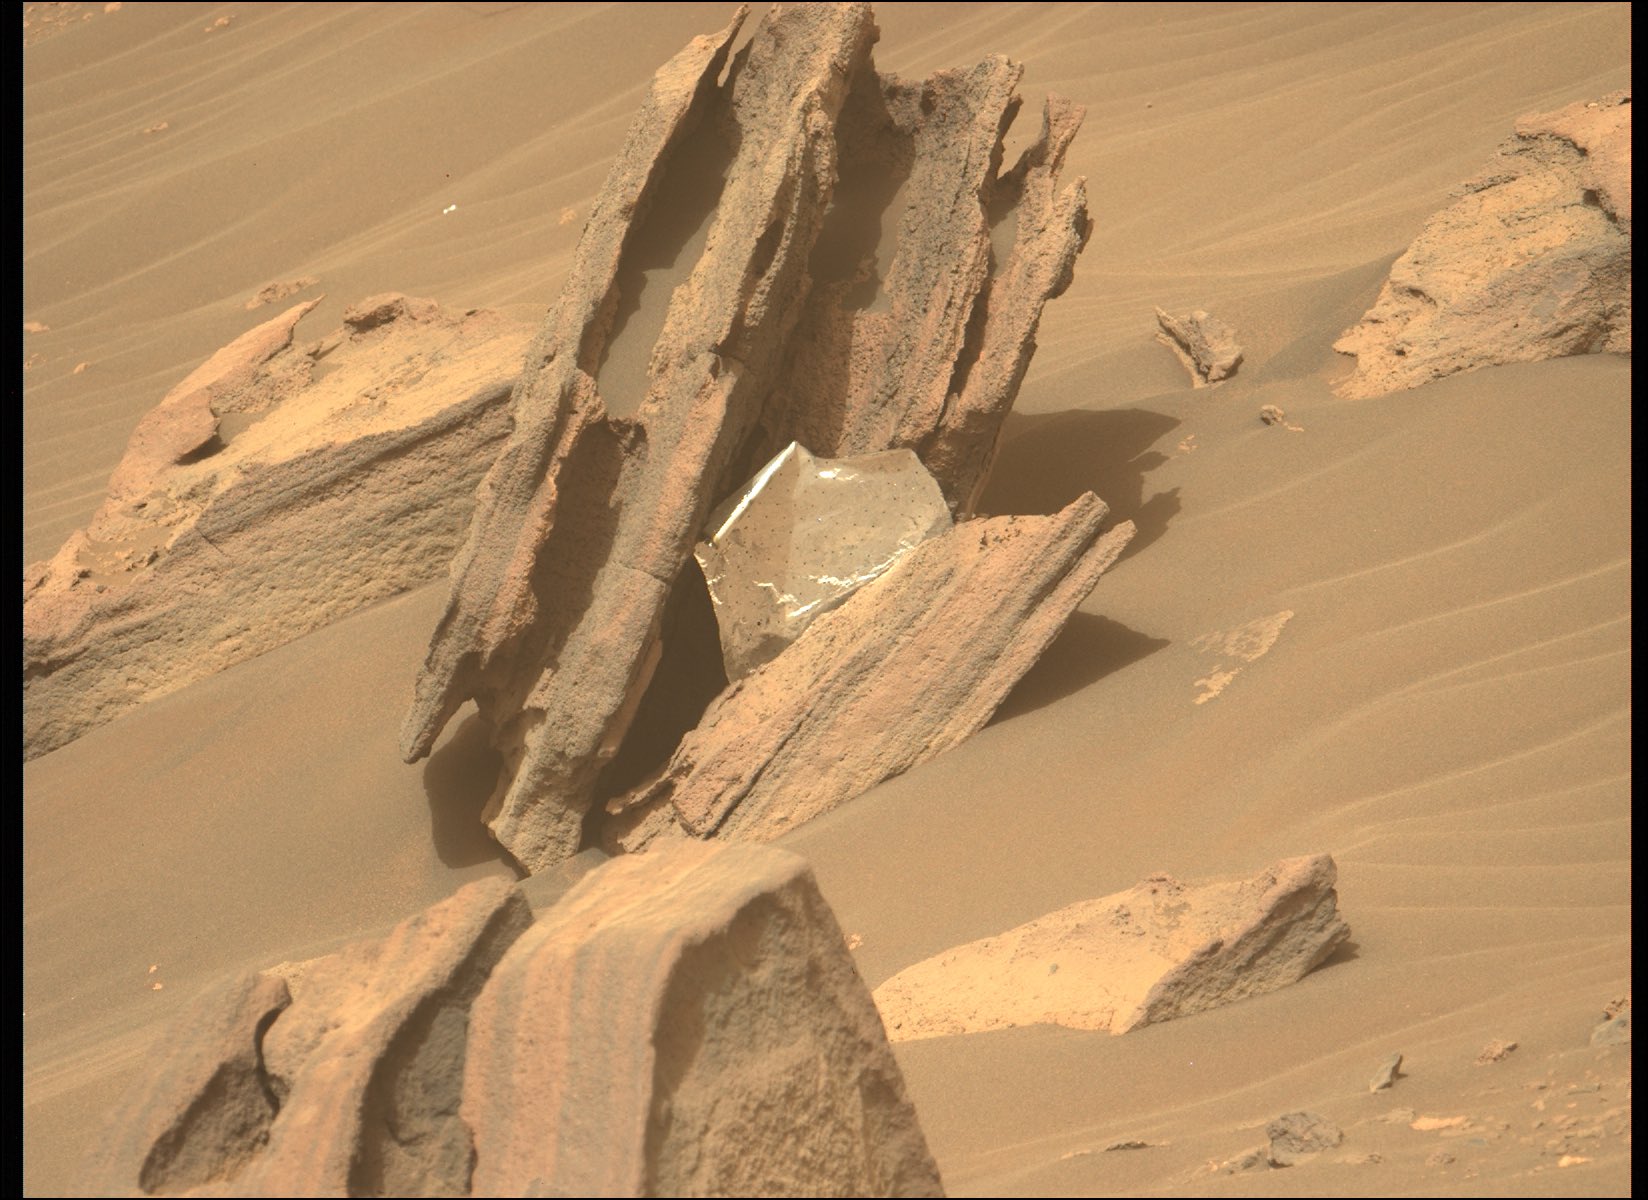 Débris produit lors de l'atterrissage de Perseverance, retrouvé par hasard par le rover à 2 km du site de descente © Nasa, JPL-Caltech, ASU